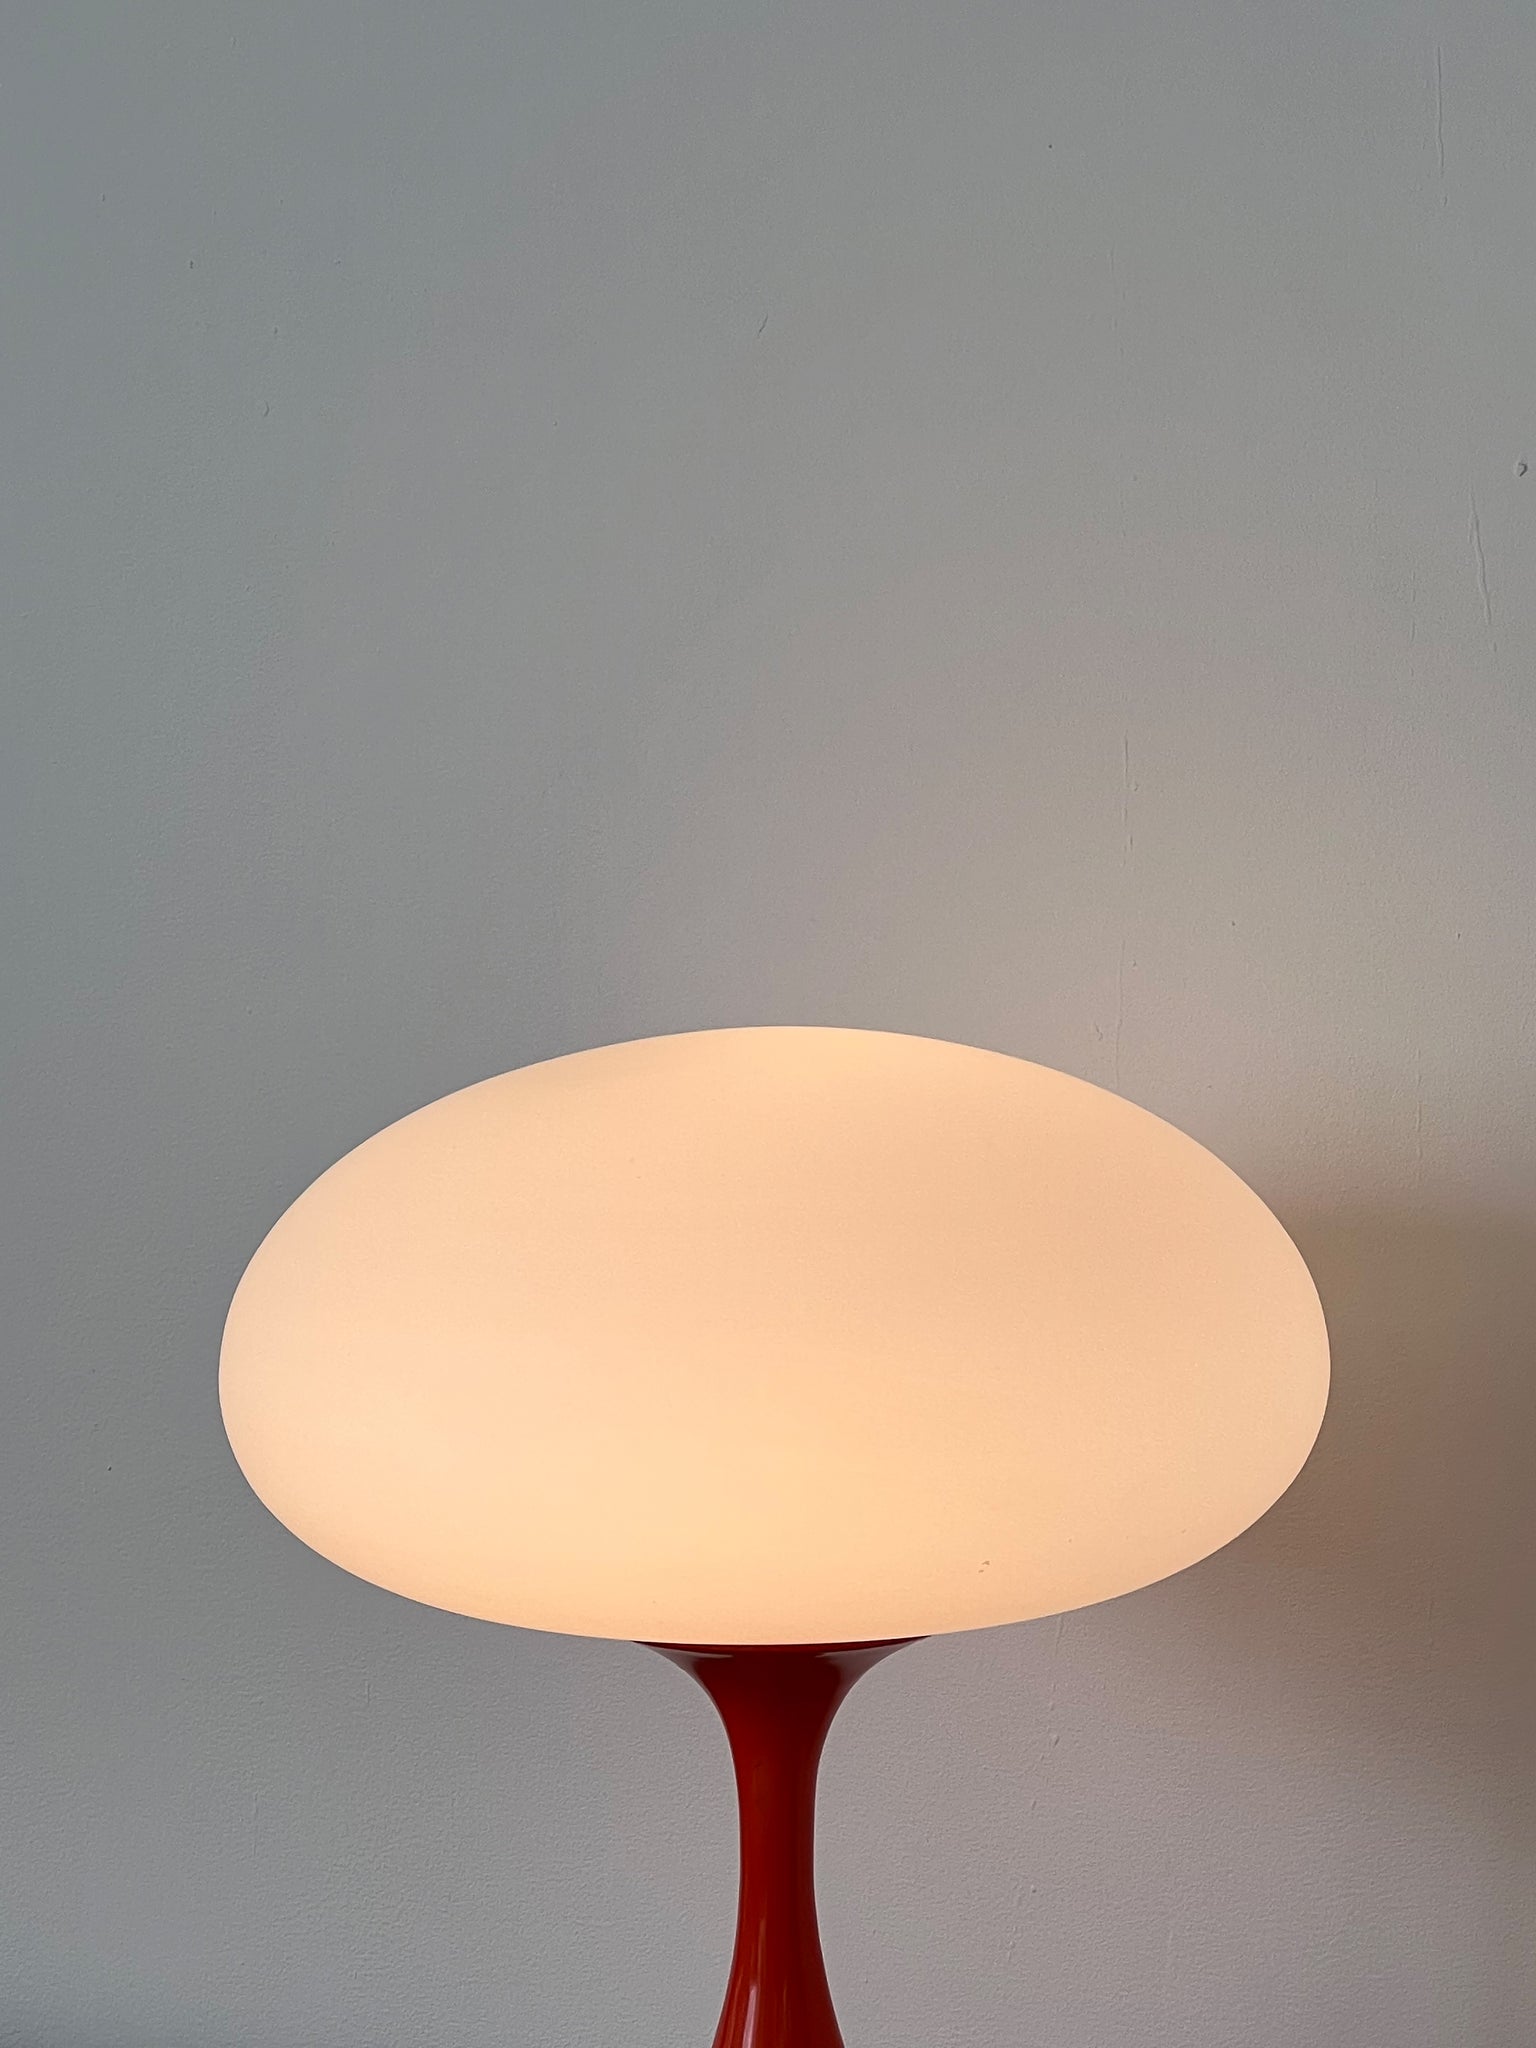 1960s Atomic Orange Laurel Mushroom Lamp